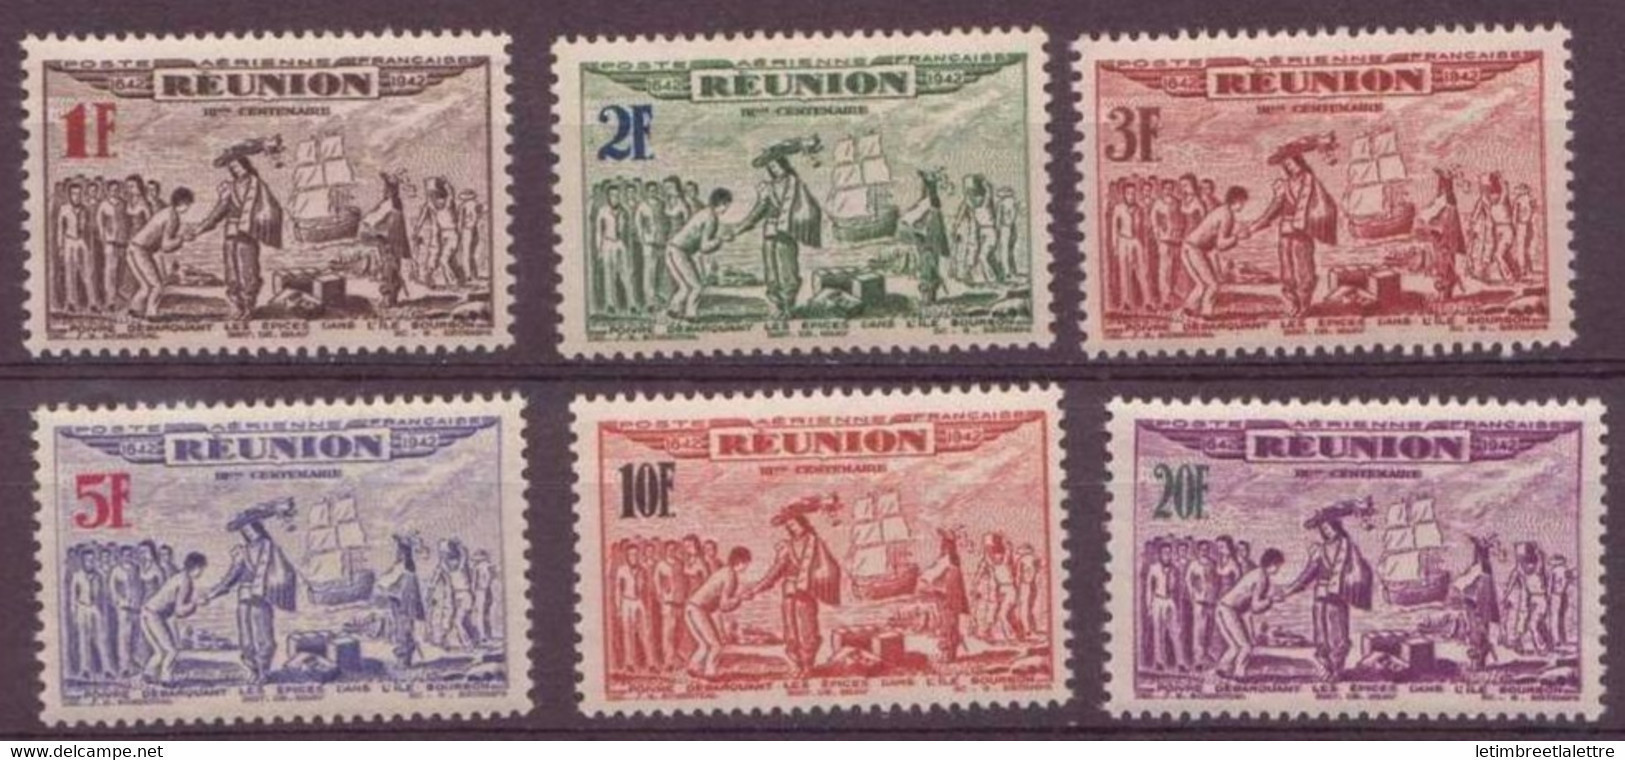 Réunion - Poste Aérienne - YT N° 18 à 23 ** - Neuf Sans Charnière - 1943 - Luftpost